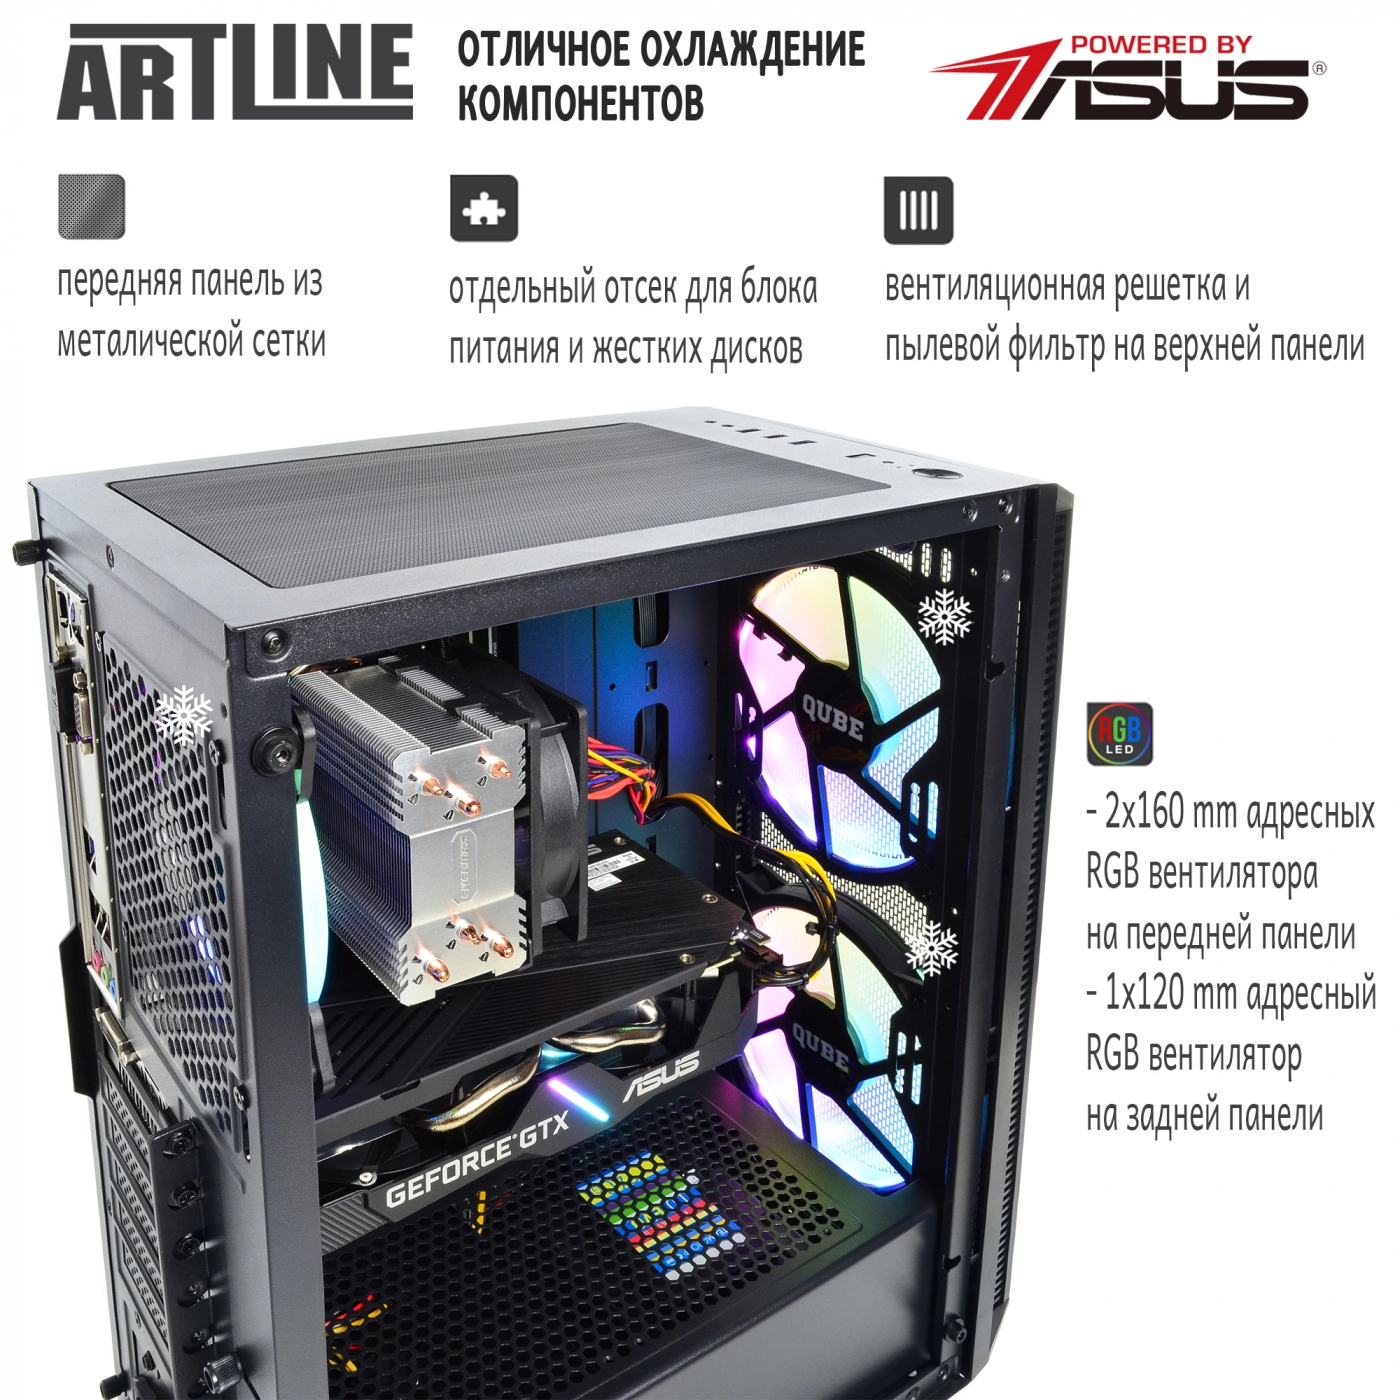 Купить Компьютер ARTLINE Gaming X33v07 - фото 2